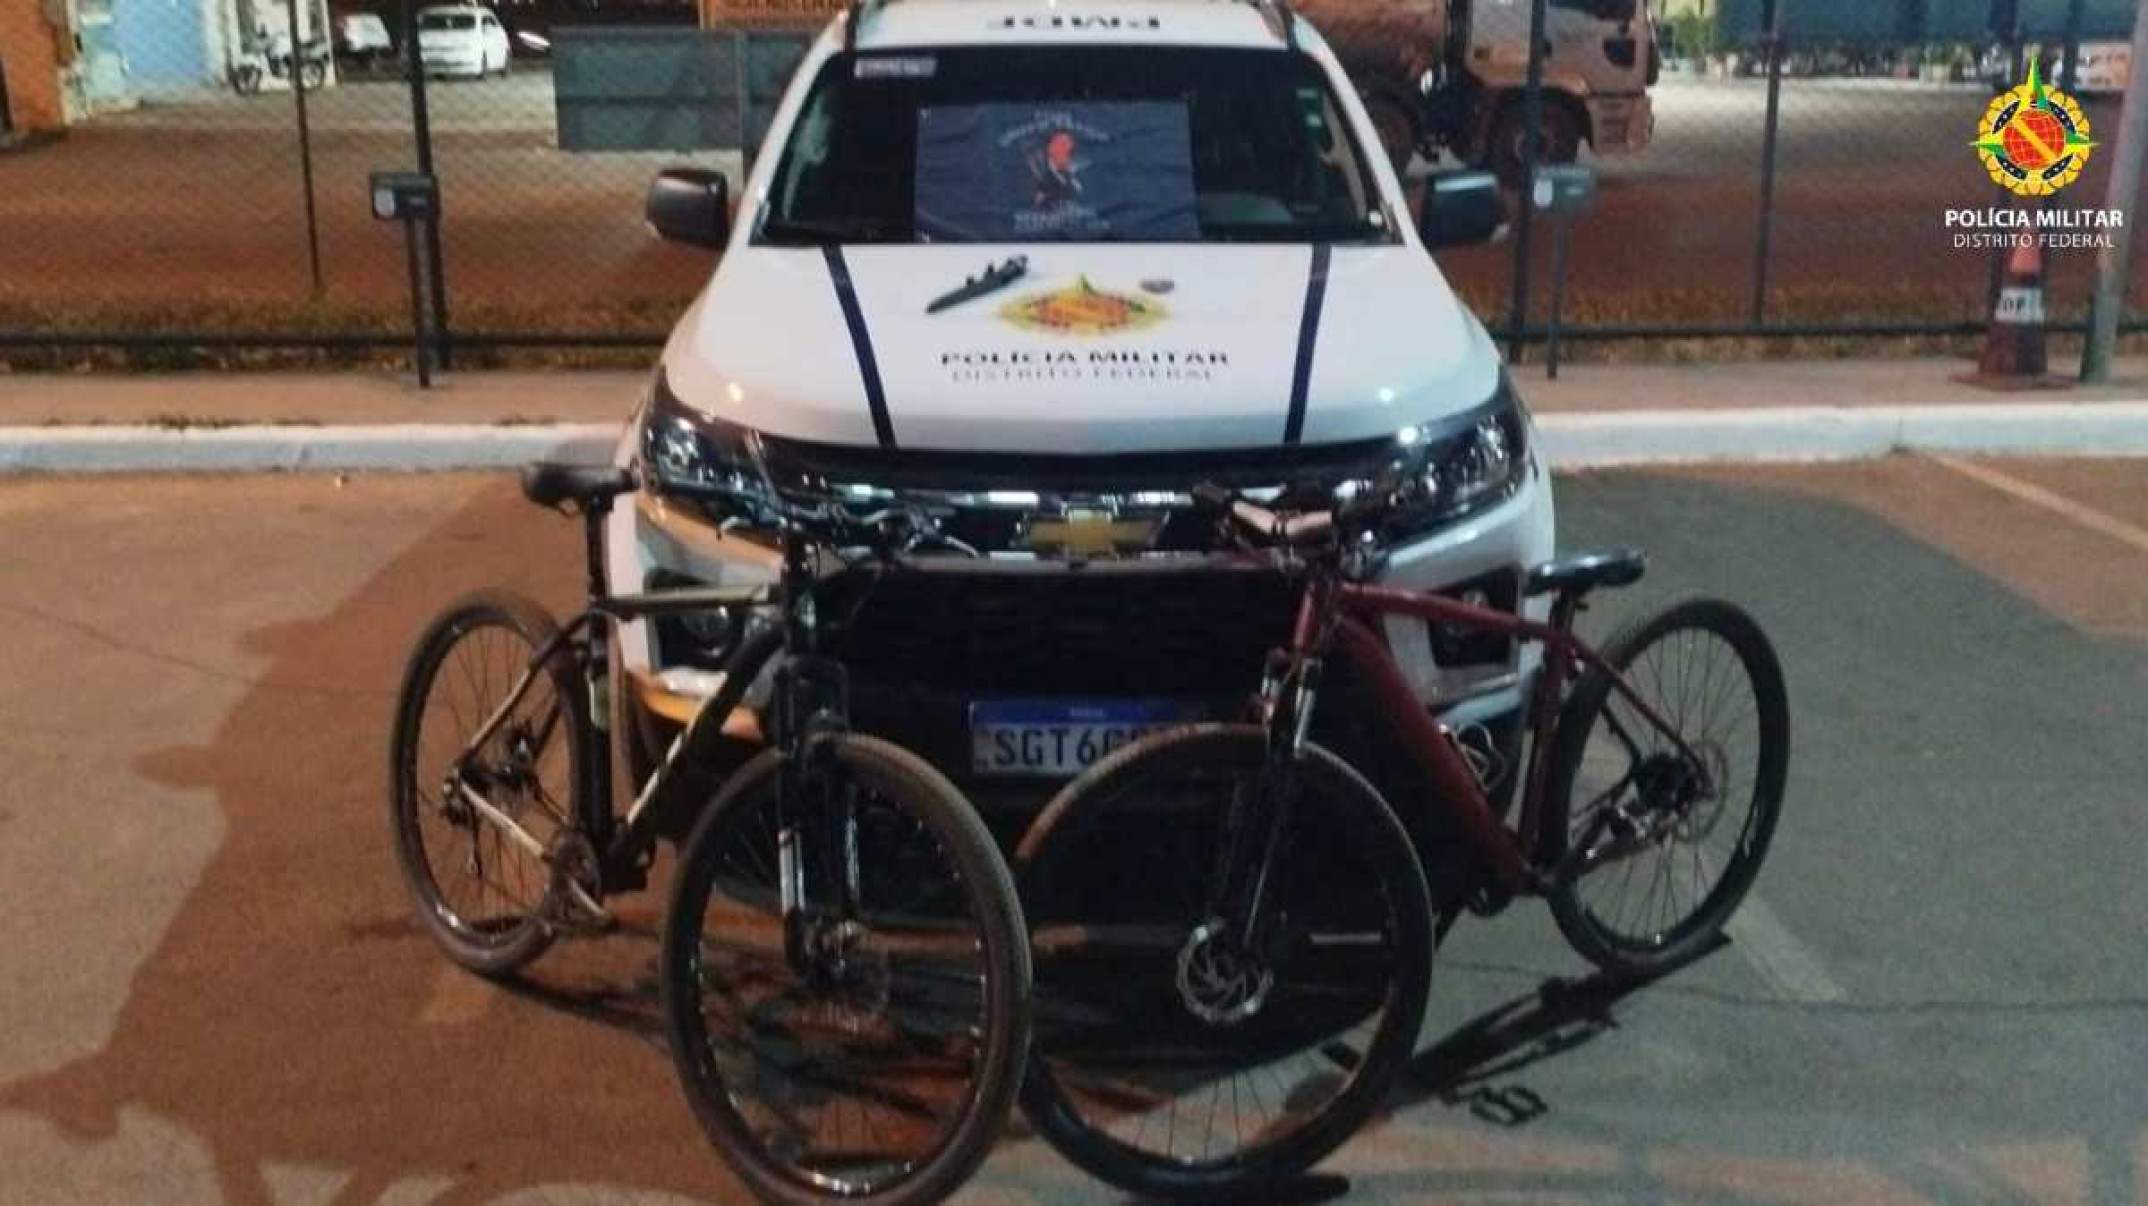 Bicicletas roubadas são recuperadas minutos após furto em Arniqueiras